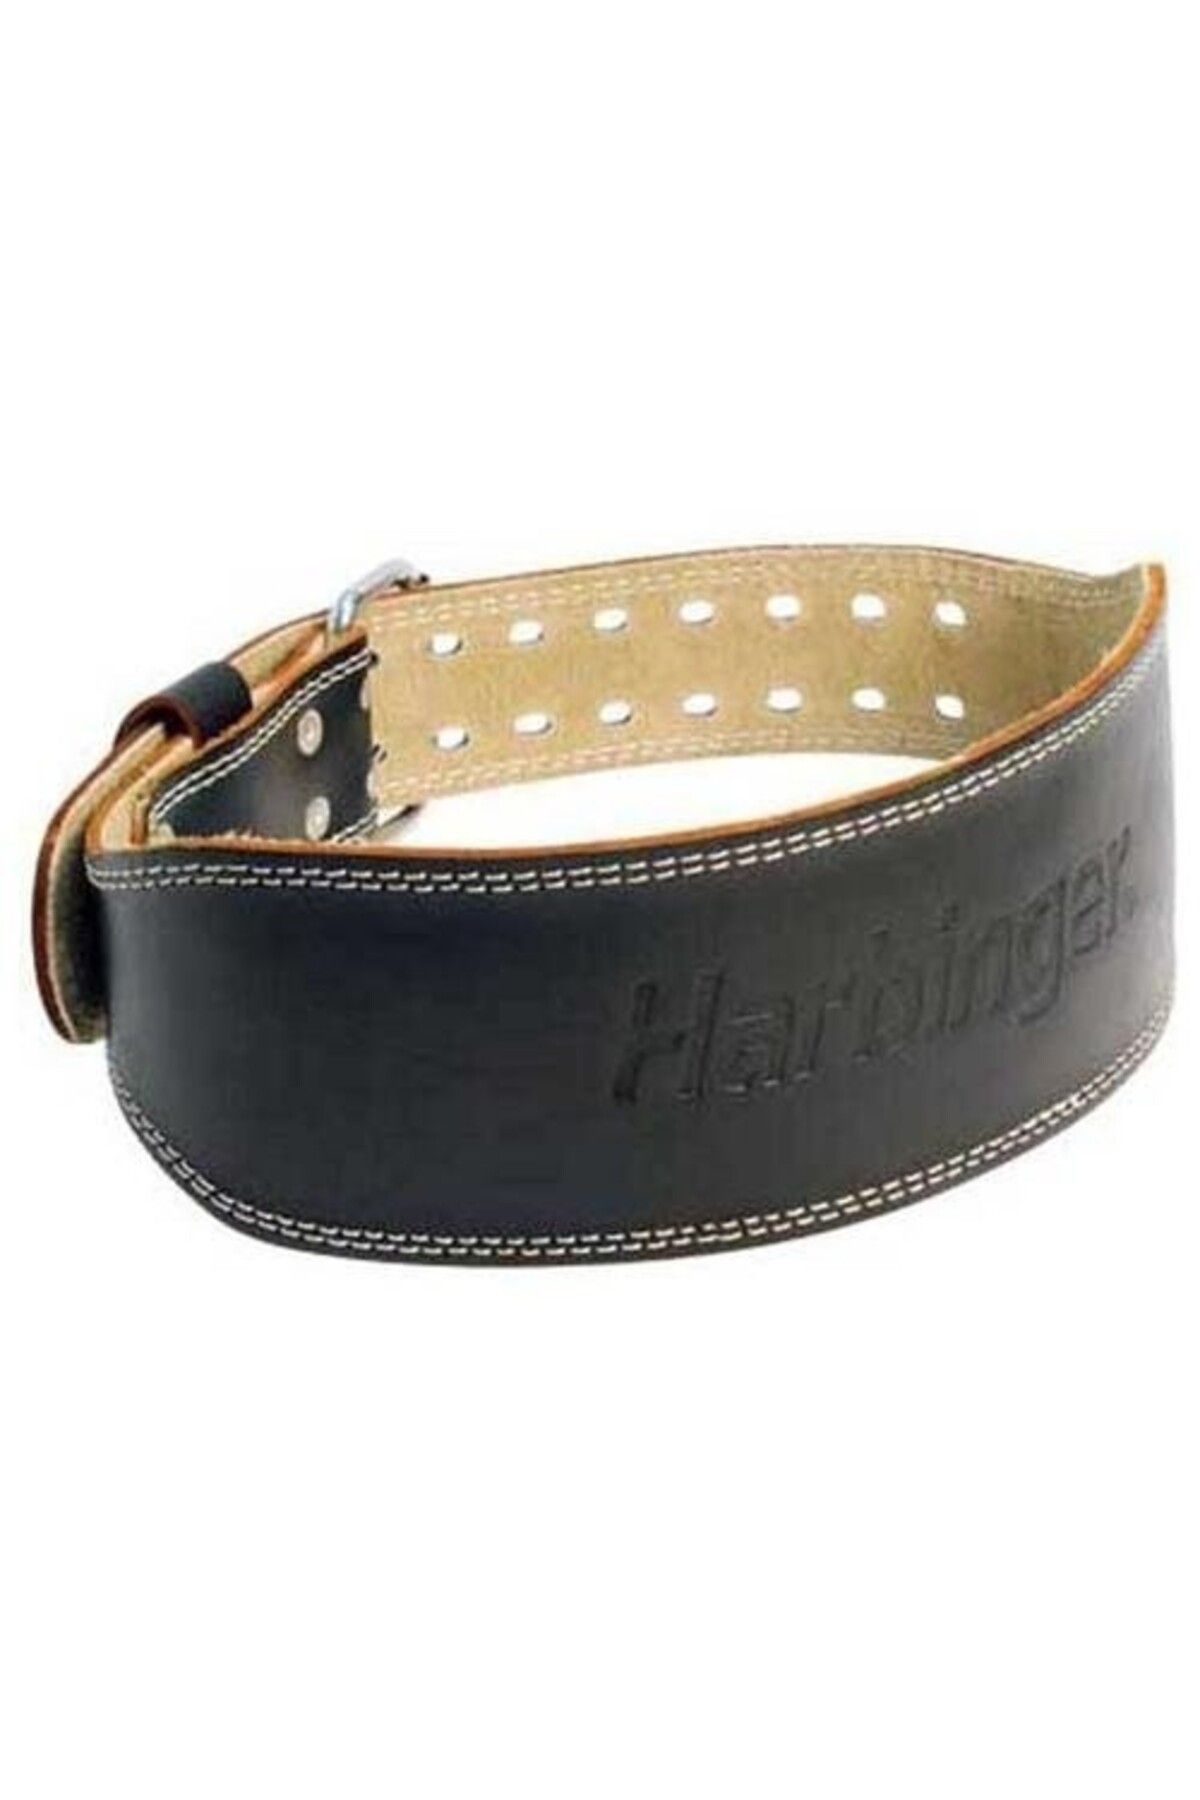 Harbinger 4 Padded Leather Belt Kemer Xl